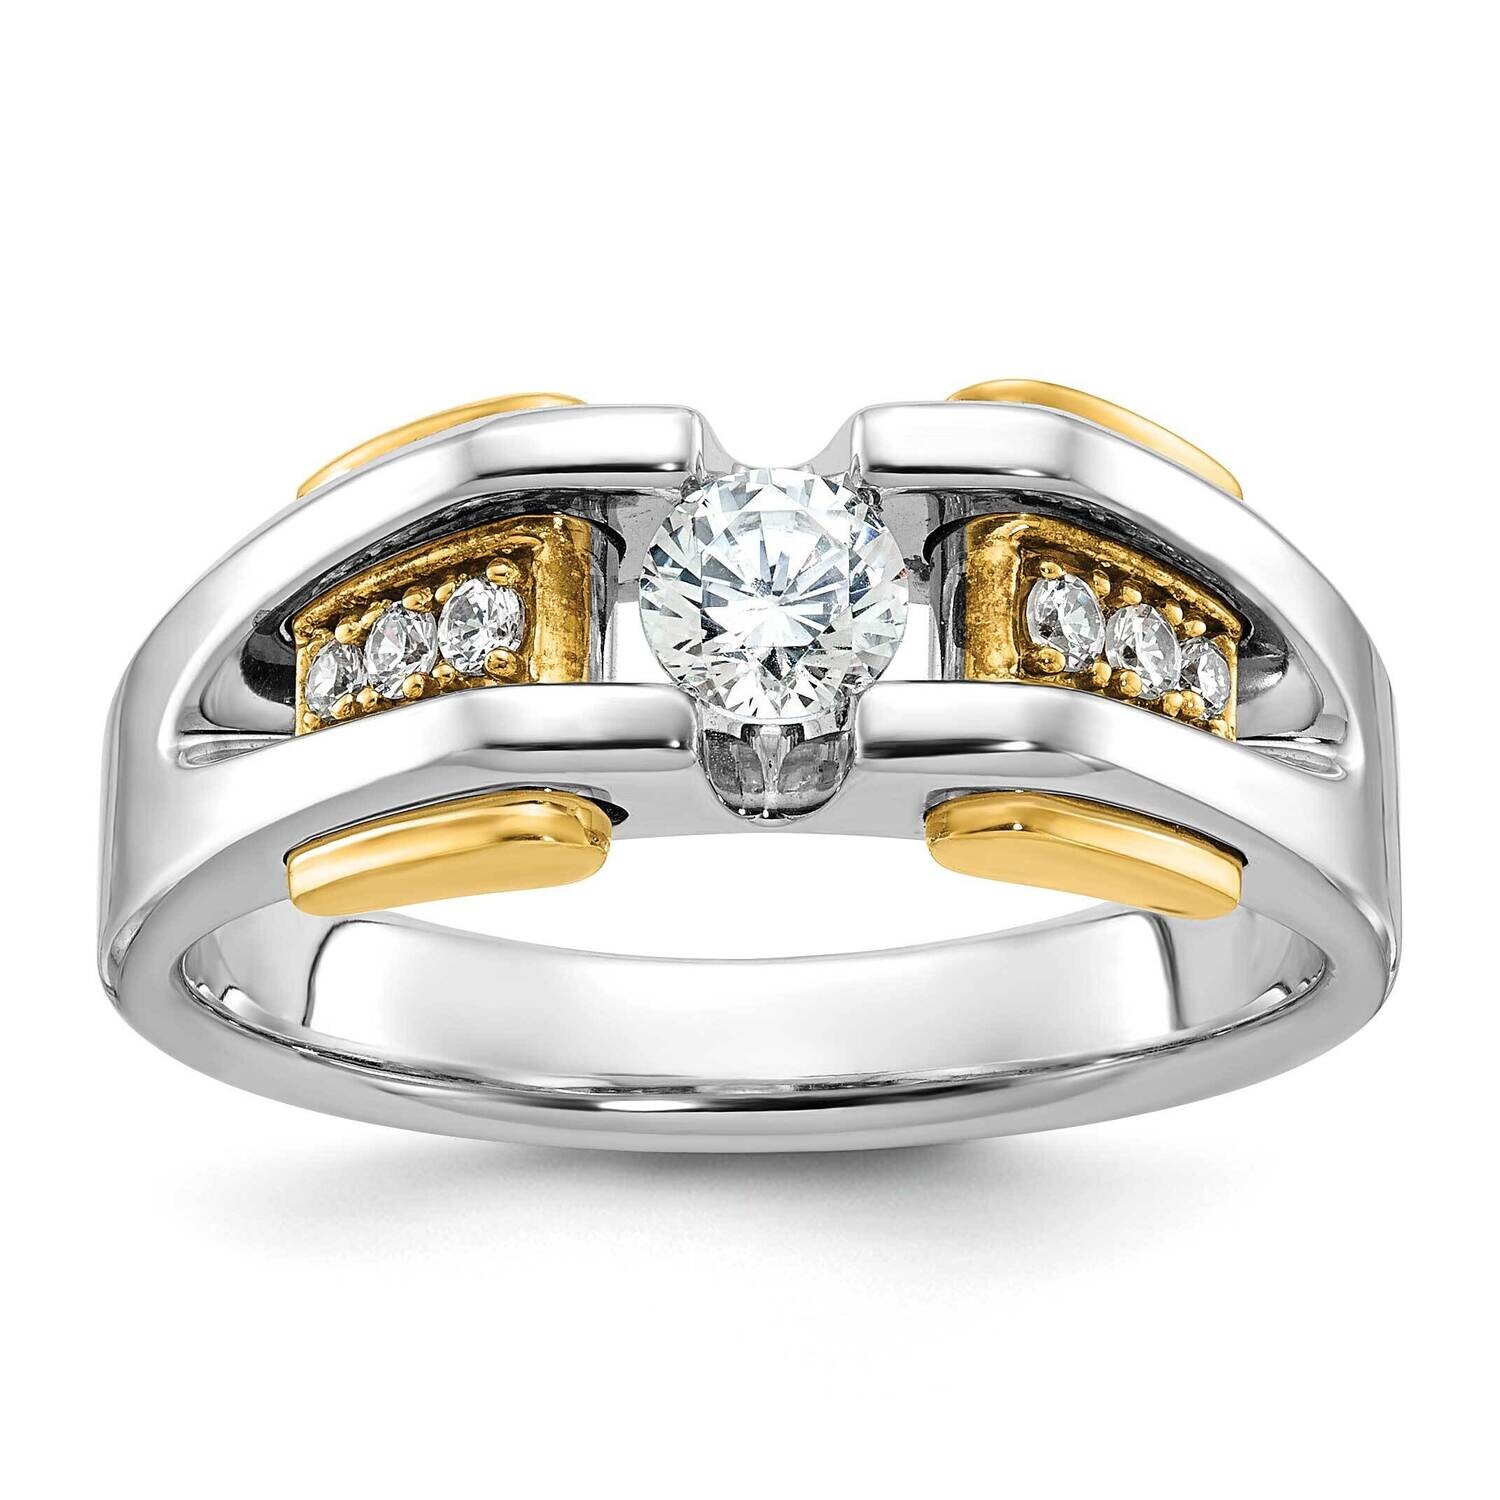 Ibgoodman Men's Diamond Ring Mounting 14k Two-Tone Gold B63464-4WY